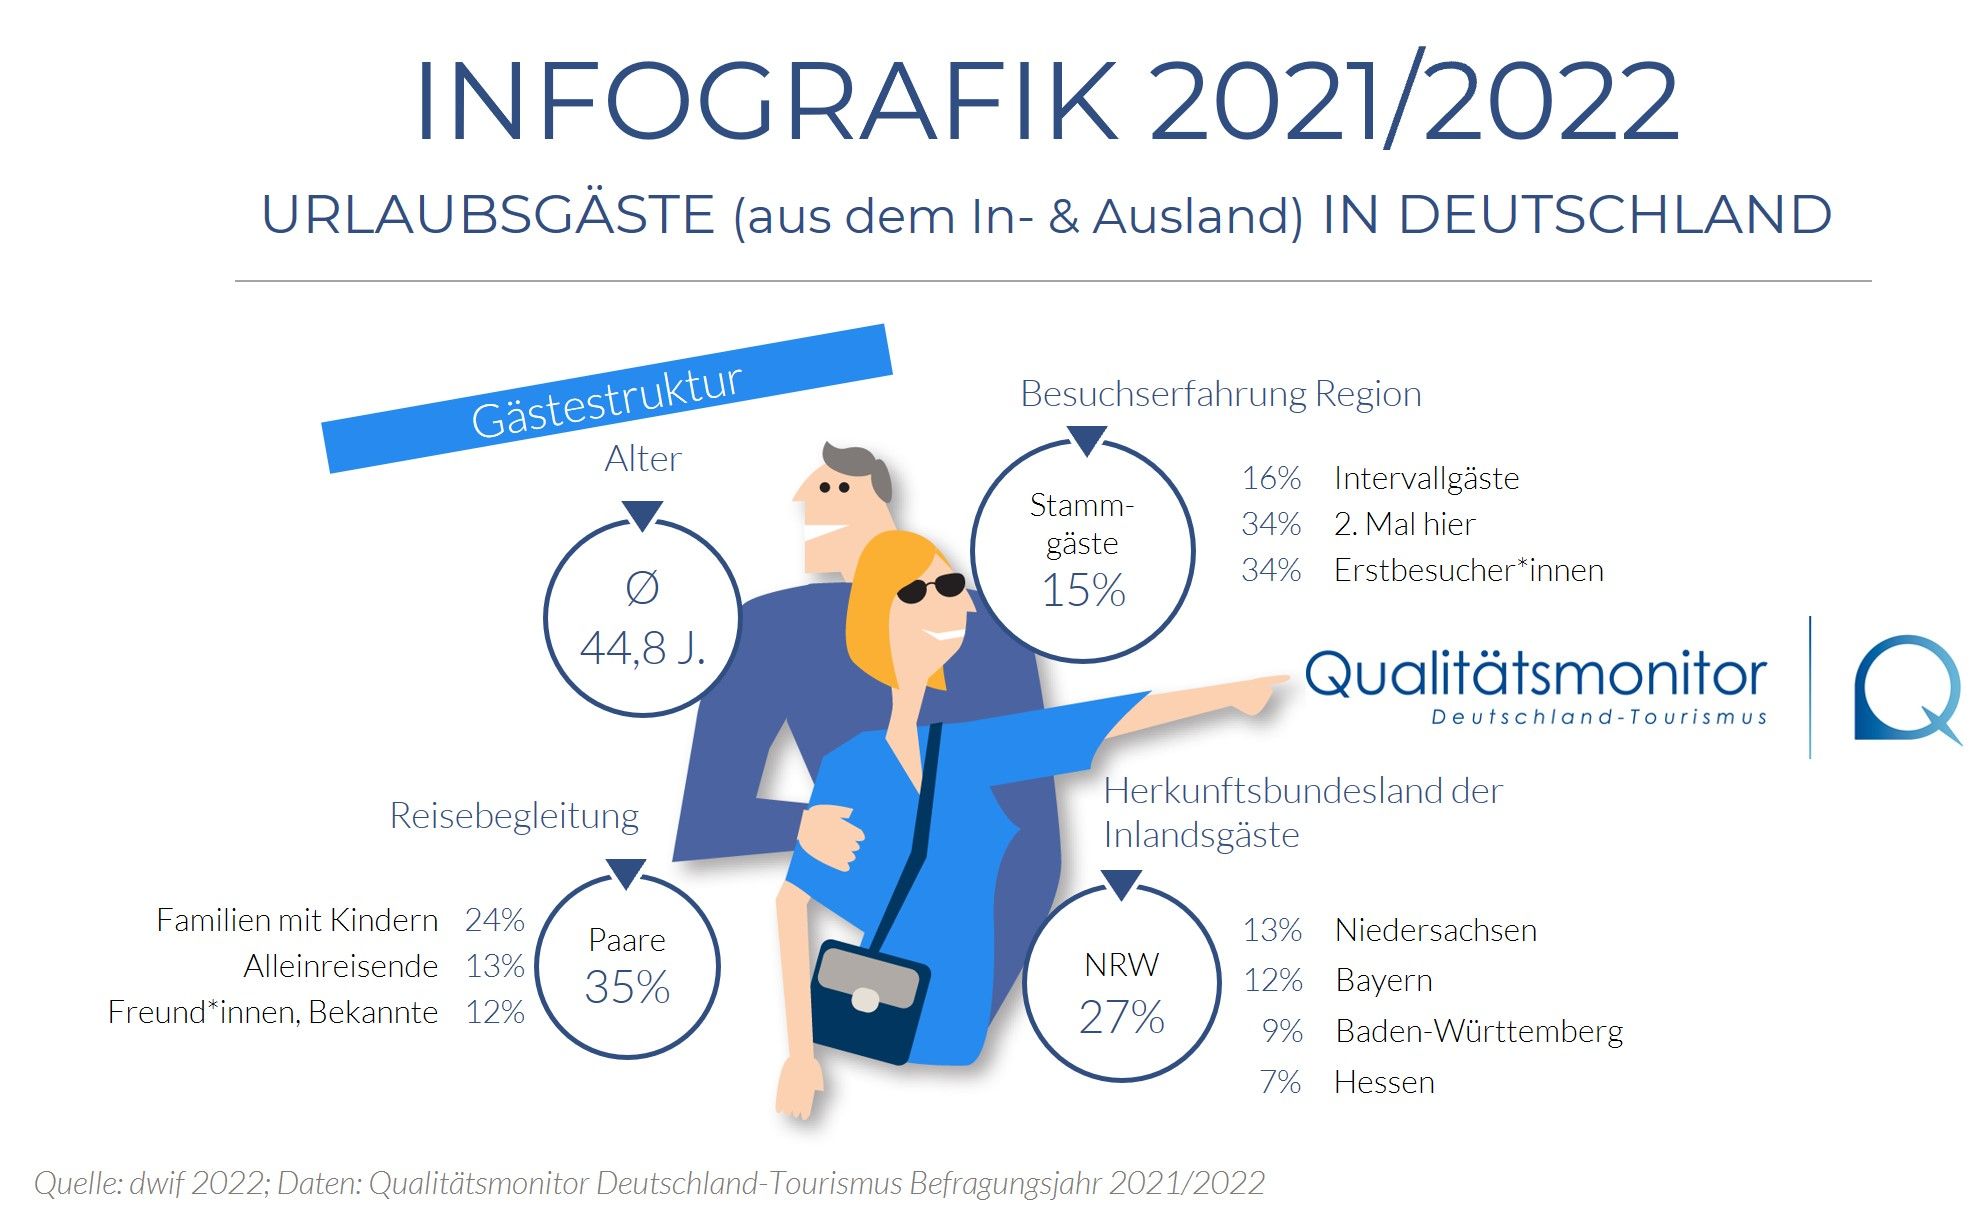 dwif-Infografik Qualitätsmonitor Deutschland-Tourismus 2021/2022